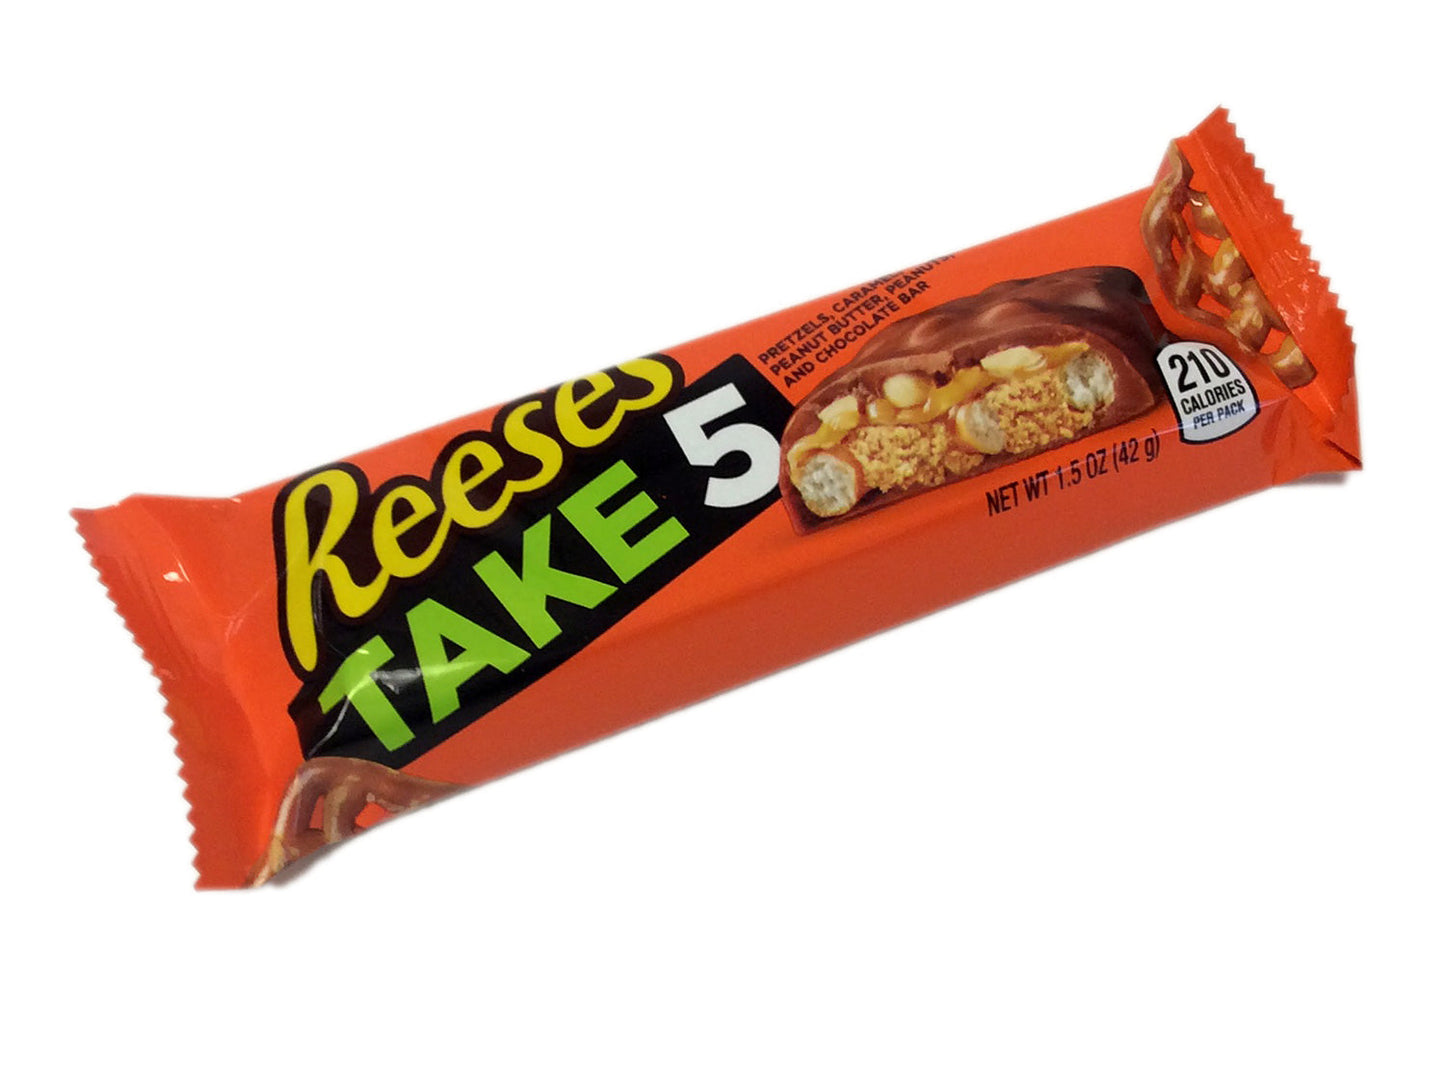 Reese's Take 5 - 1.5 oz